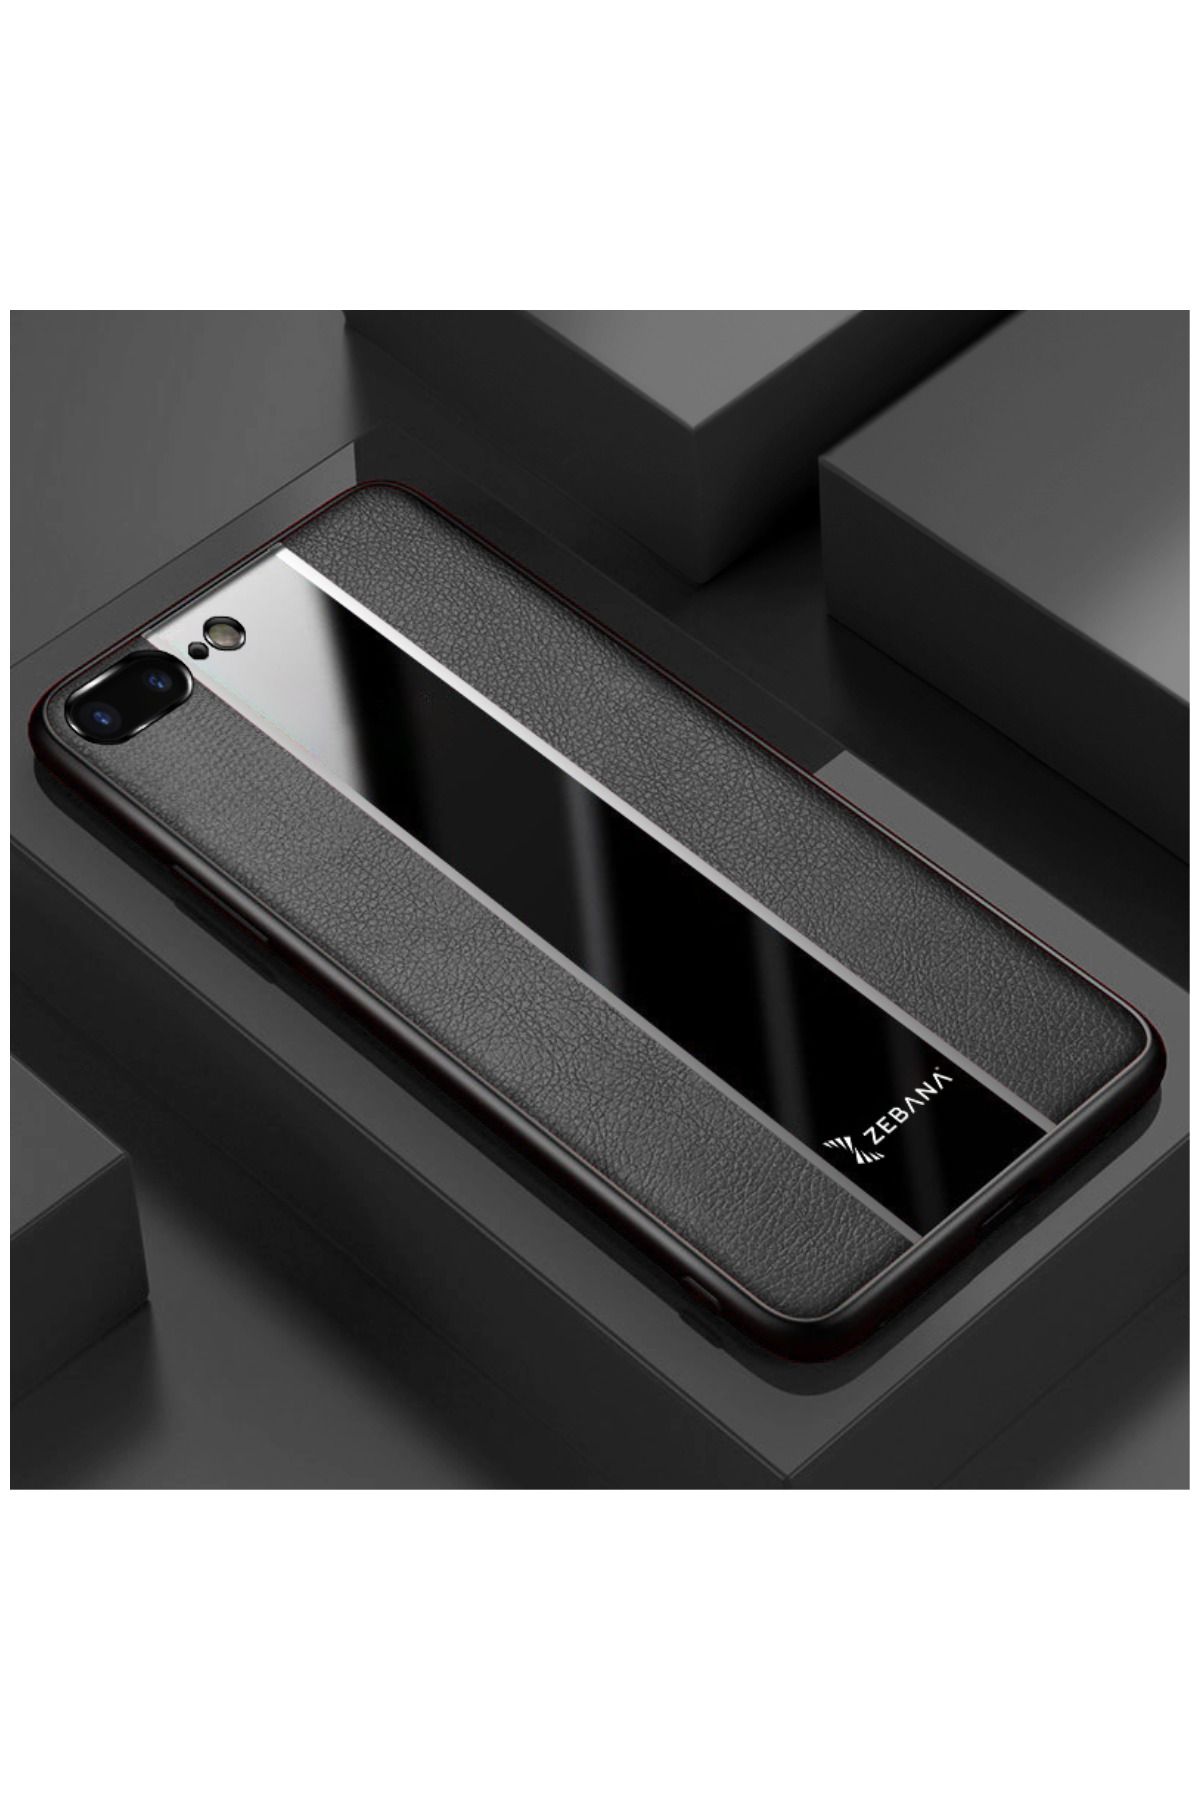 Zebana Apple Iphone 8 Plus Uyumlu Kılıf Premium Deri Kılıf Siyah